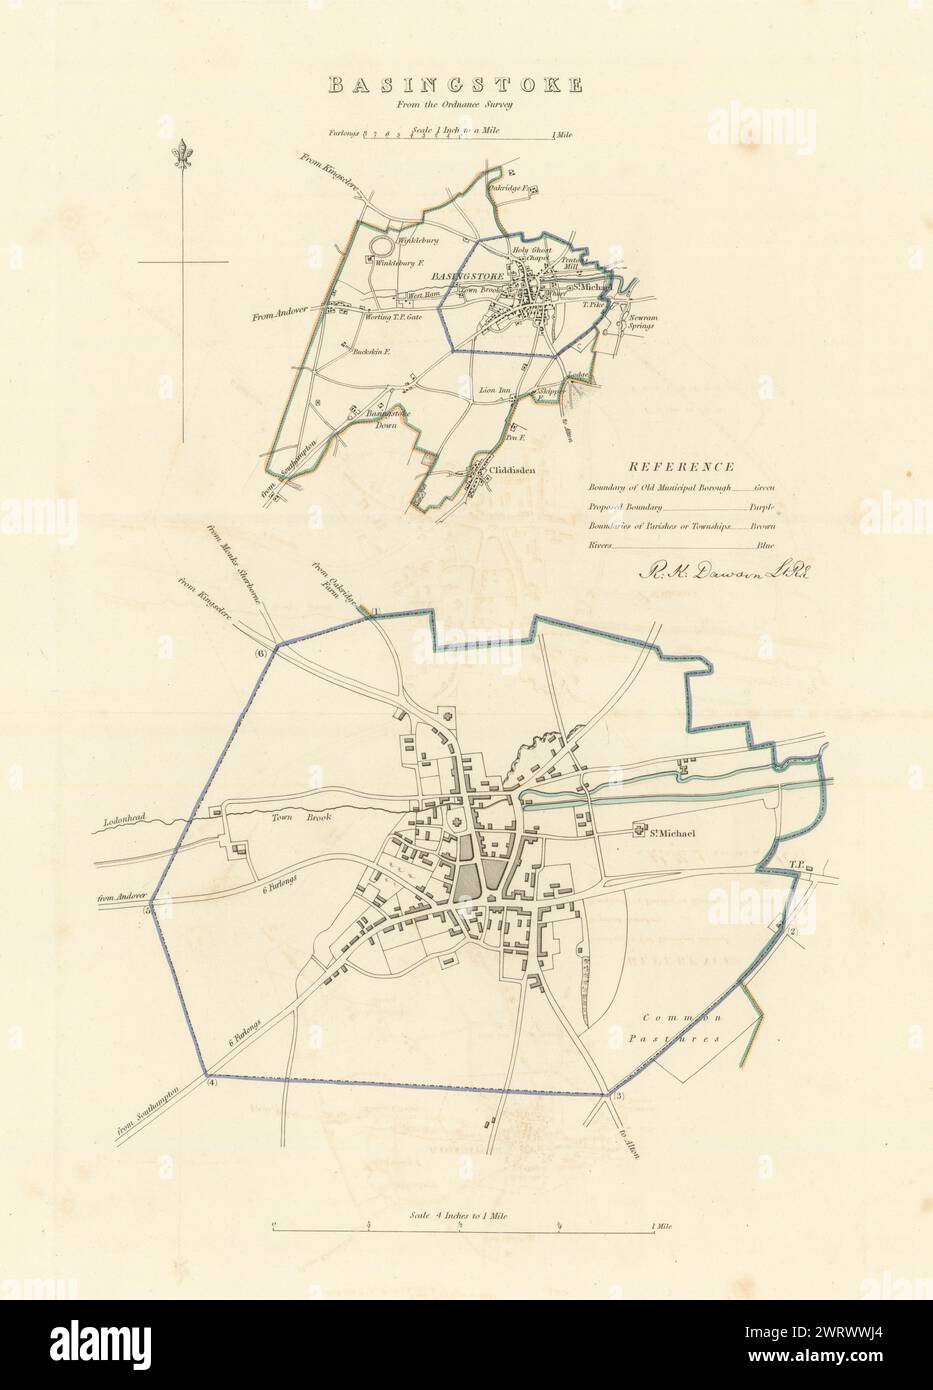 BASINGSTOKE Gemeinde/Stadt planen. Grenzkommission. Hampshire. DAWSON 1837 Karte Stockfoto